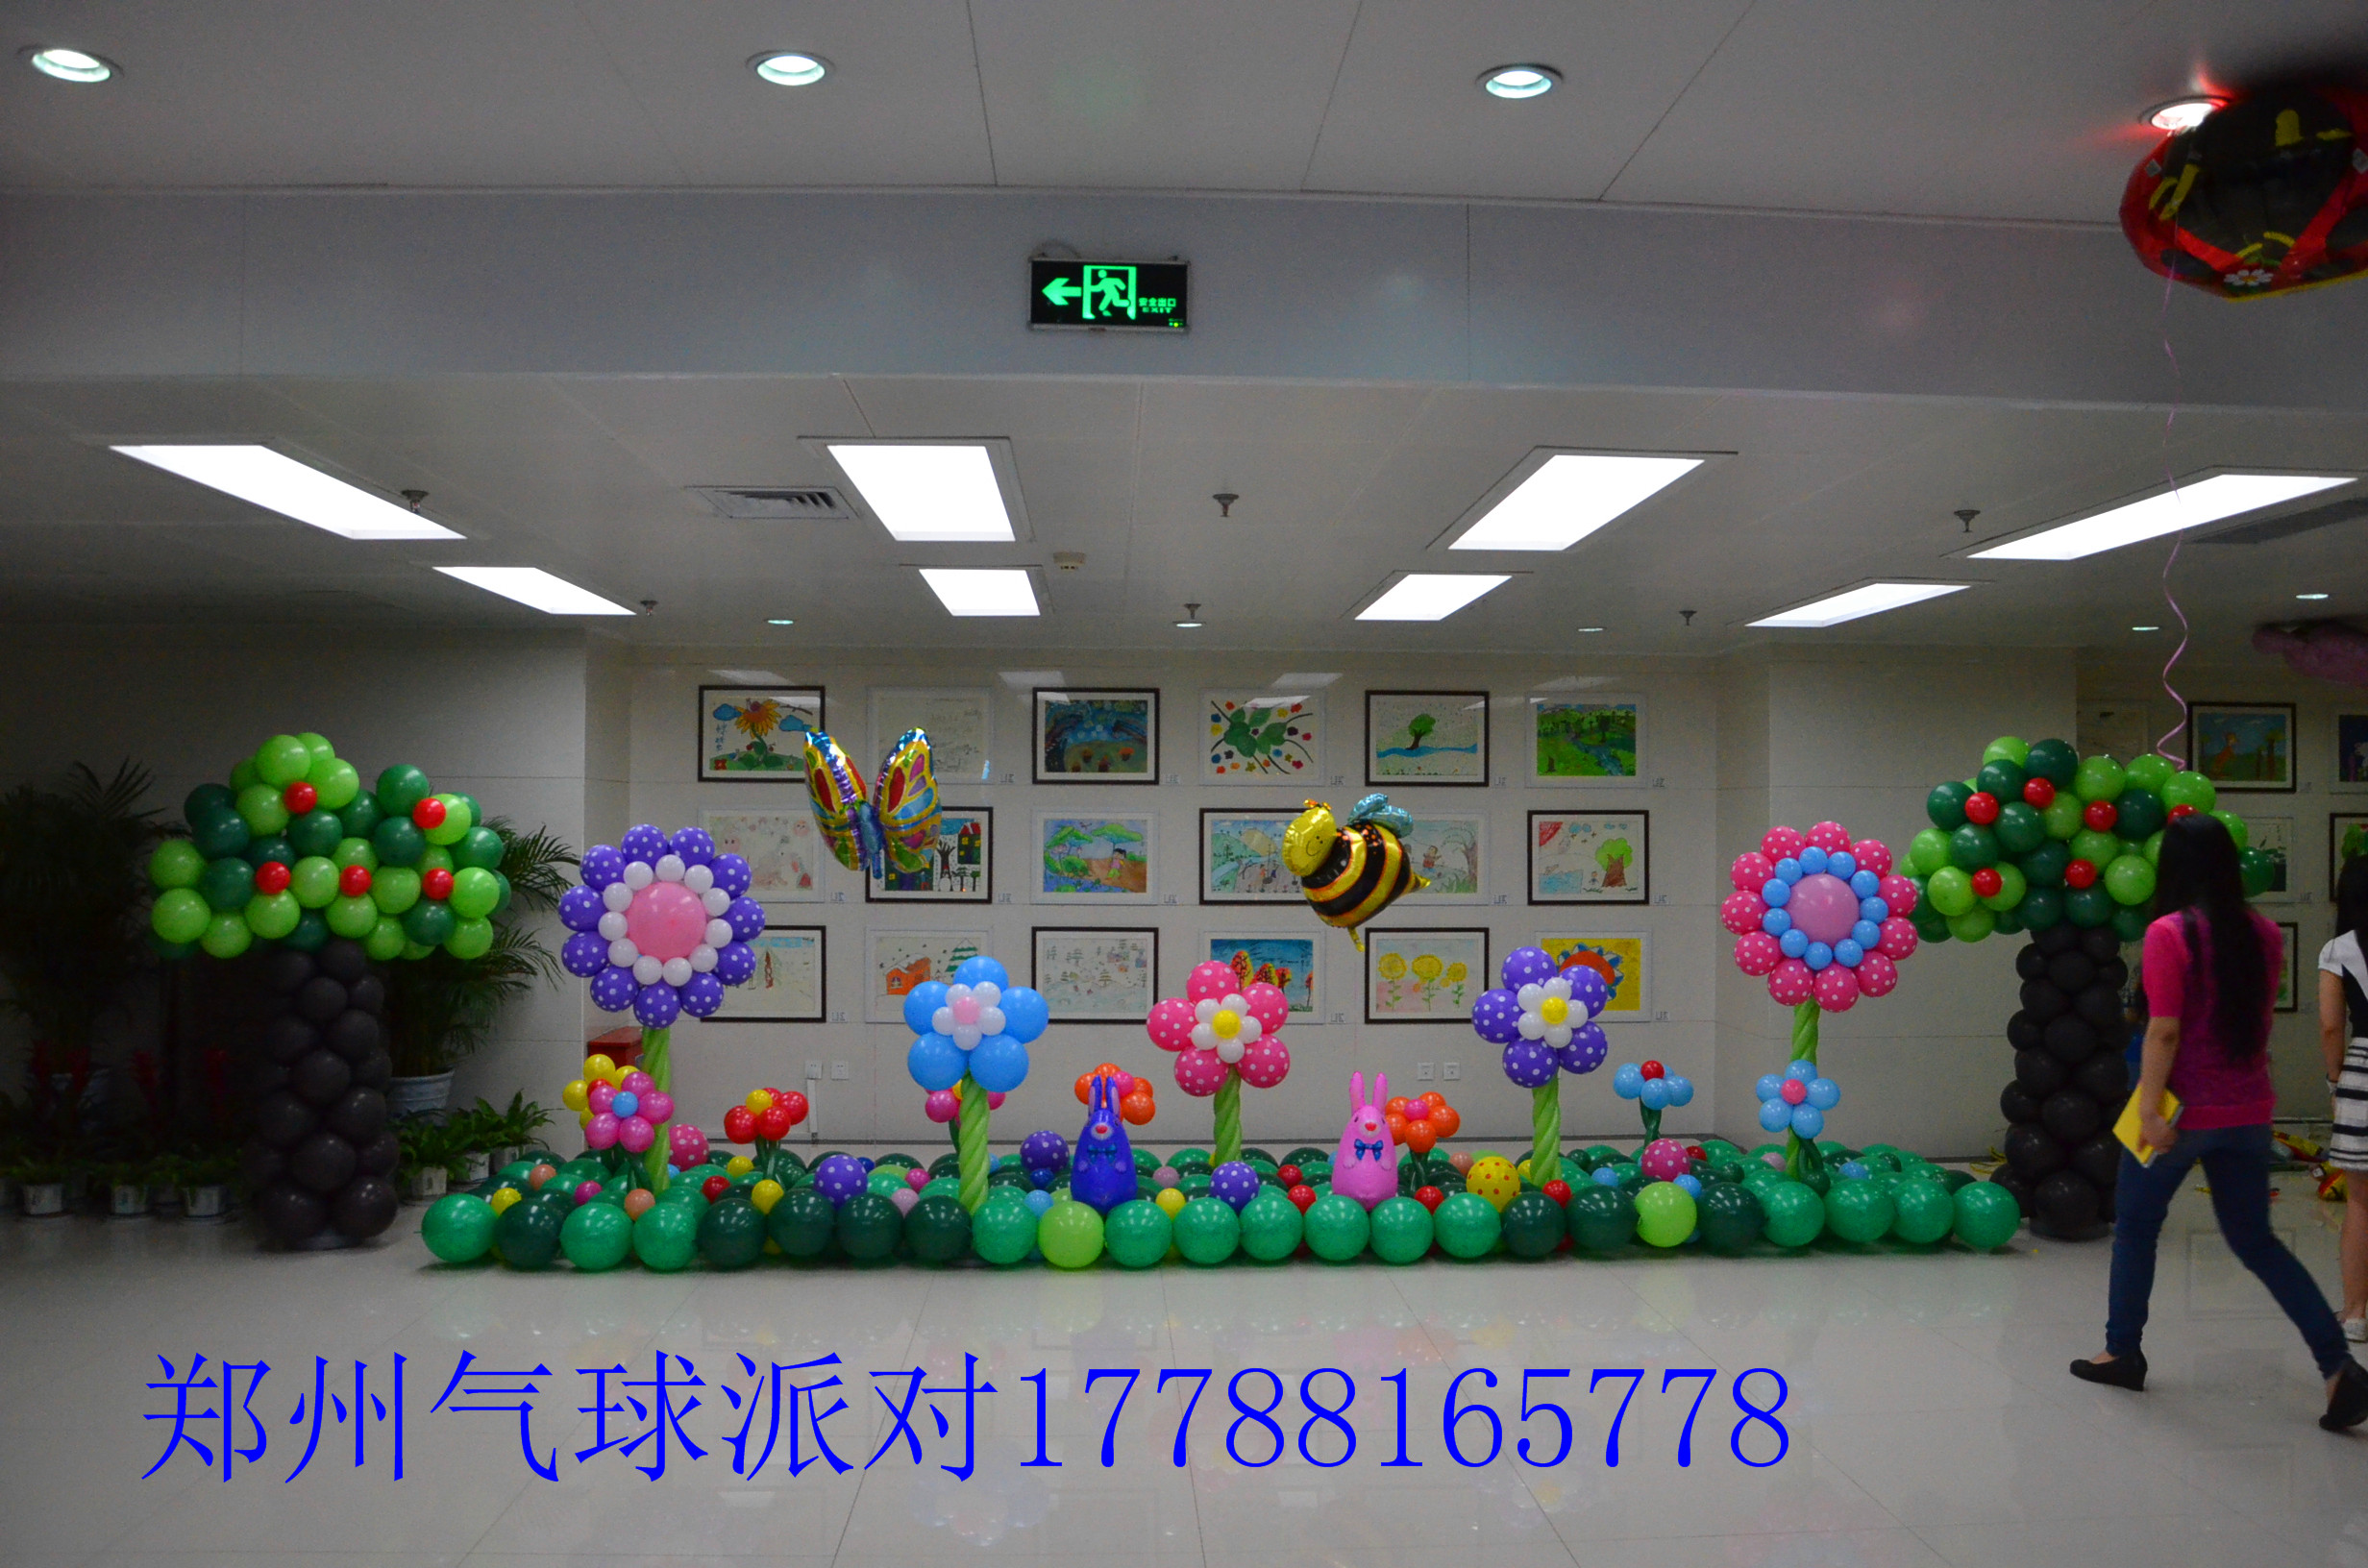 郑州空飘气球派送 宝宝宴气球策划商场活动气球策划布置幼儿园活动气球策划布置气球婚礼策划布置生日派对气球策划布置